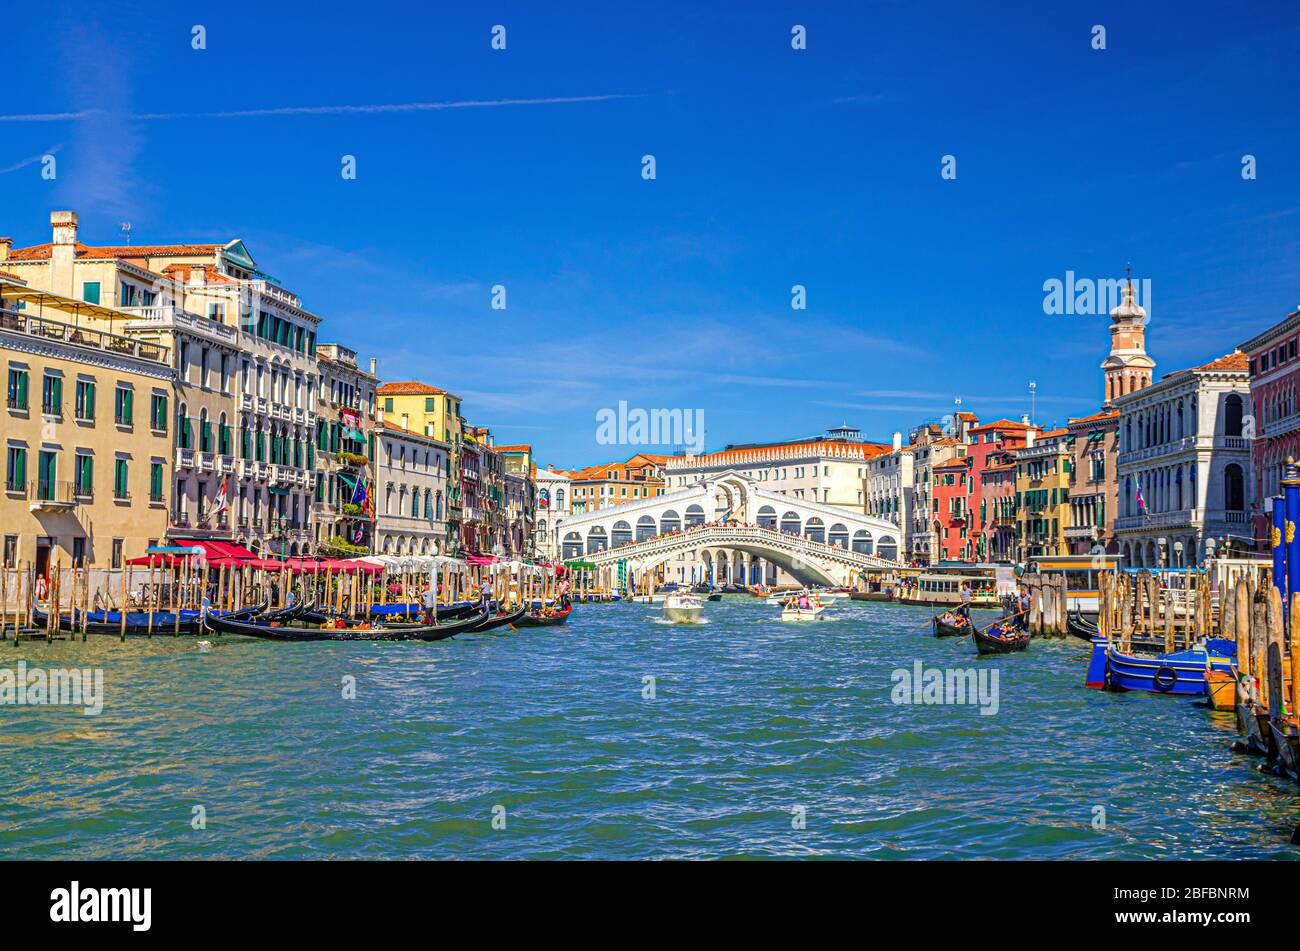 Venezia con il Ponte di Rialto attraverso il canale navigabile del Canal Grande, architettura veneziana edifici colorati, gondole, barche, vaporetti ormeggiati e veleggiati Foto Stock